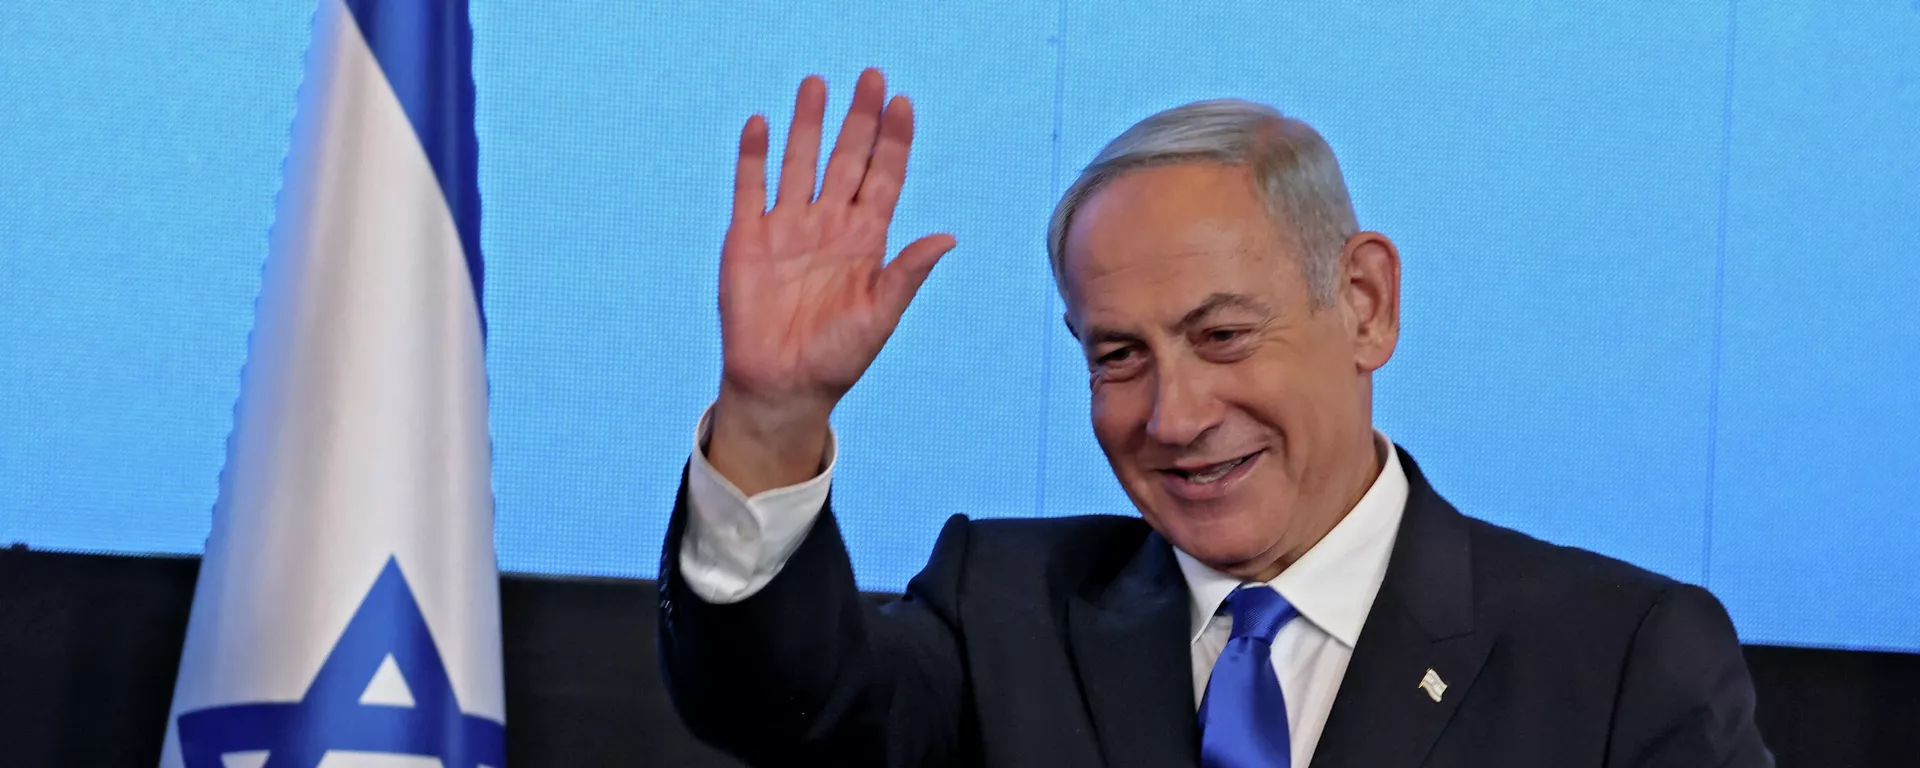 زعيم المعارضة الإسرائيلية بنيامين نتنياهو بعد فوزه في الانتخابات العامة في إسرائيل، نوفمبر/ تشرين الثاني 2022. - سبوتنيك عربي, 1920, 11.01.2023